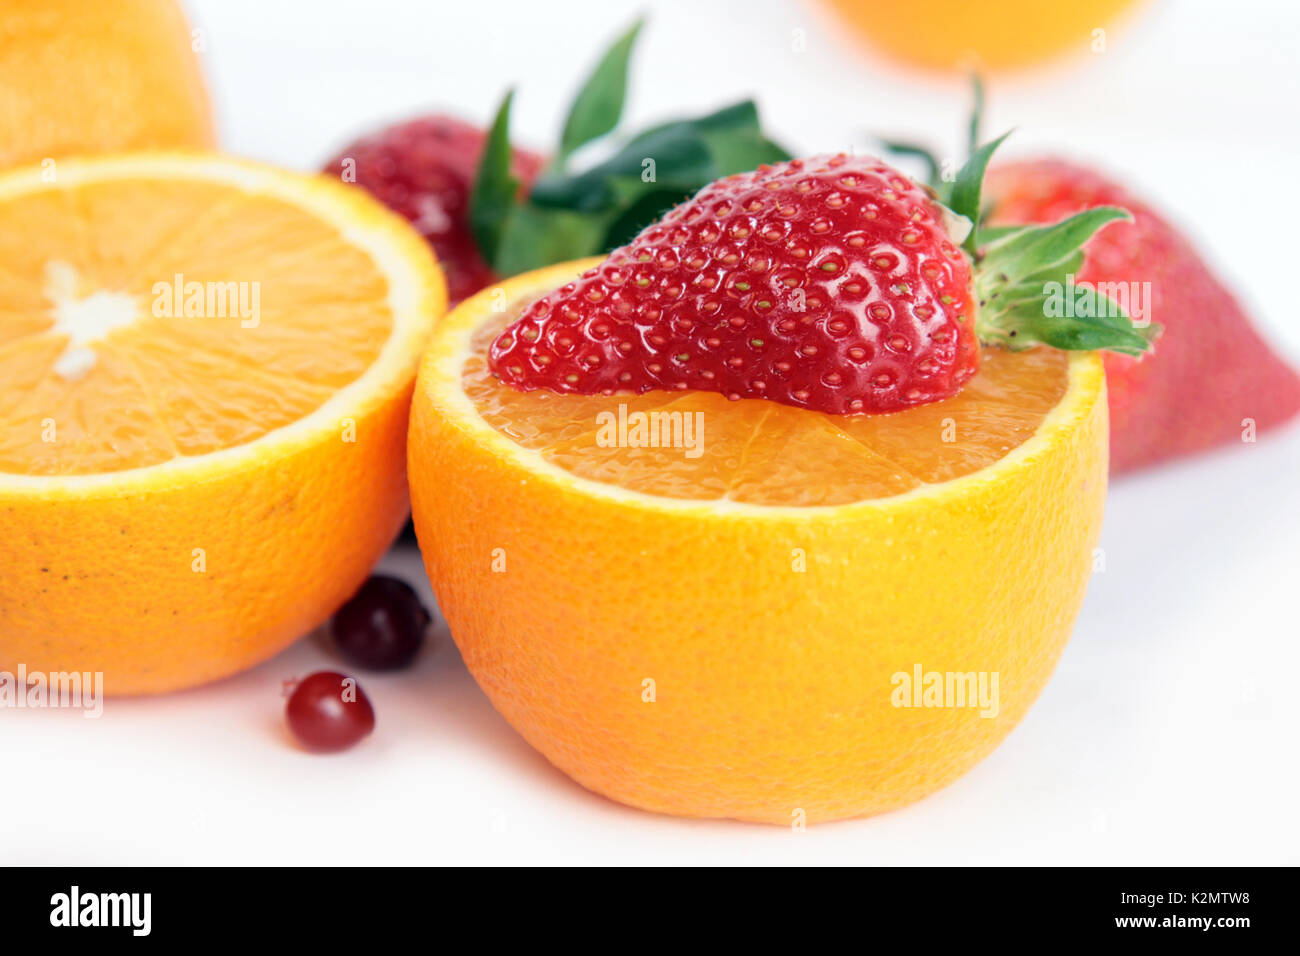 Strrawberry auf Orange. Früchte der Saison Stockfoto